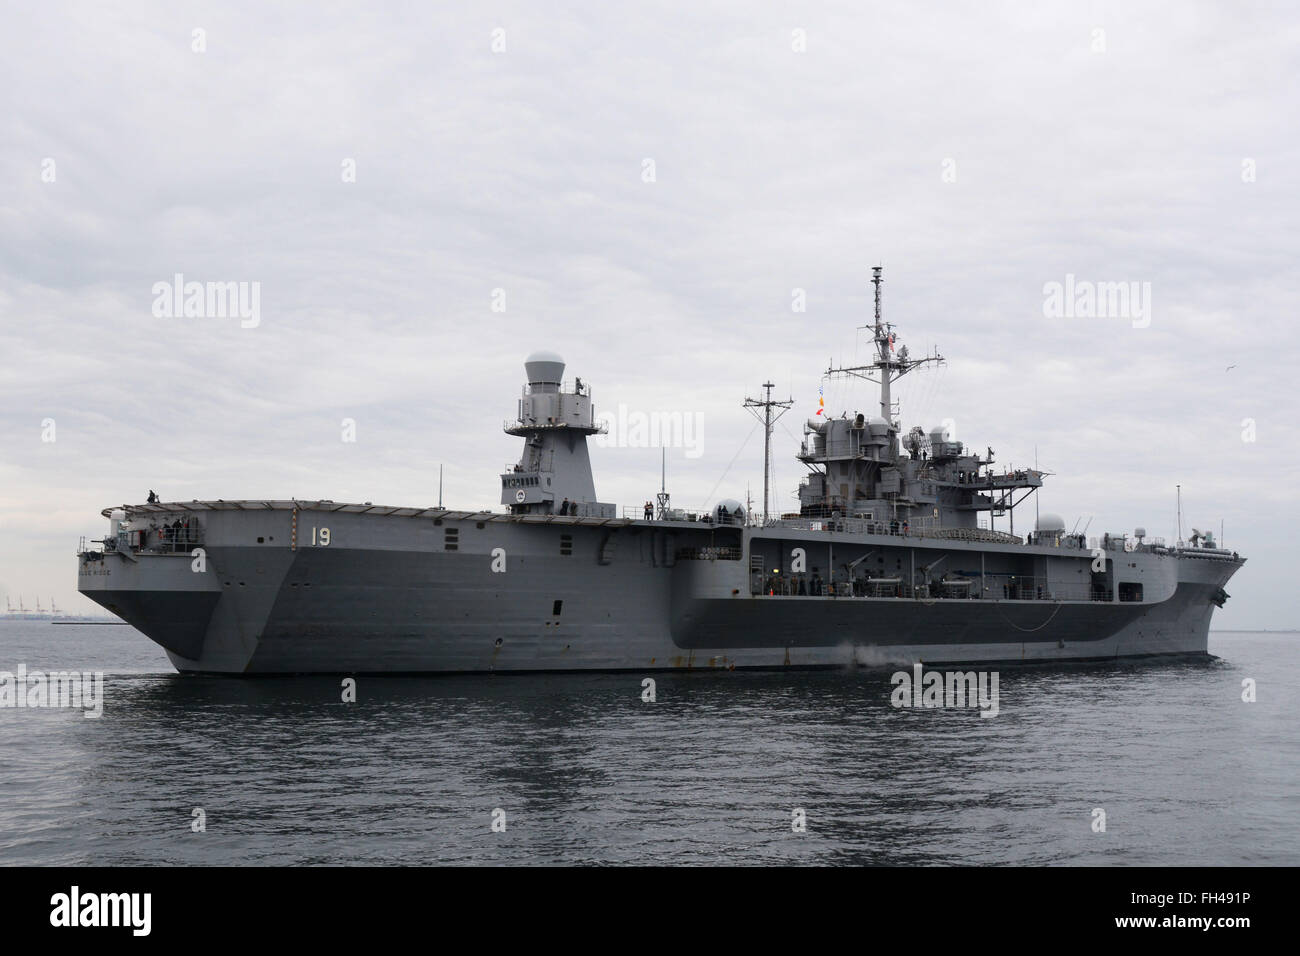 YOKOSUKA, Japon (22 février 2016) - La 7e flotte commande amphibie USS Blue Ridge (CAC 19) s'écarte sur son printemps 2016 cycle de patrouille de la 7e flotte zone des opérations après avoir terminé un mandat de six mois sélectionné disponibilité limitée période de maintenance. Banque D'Images